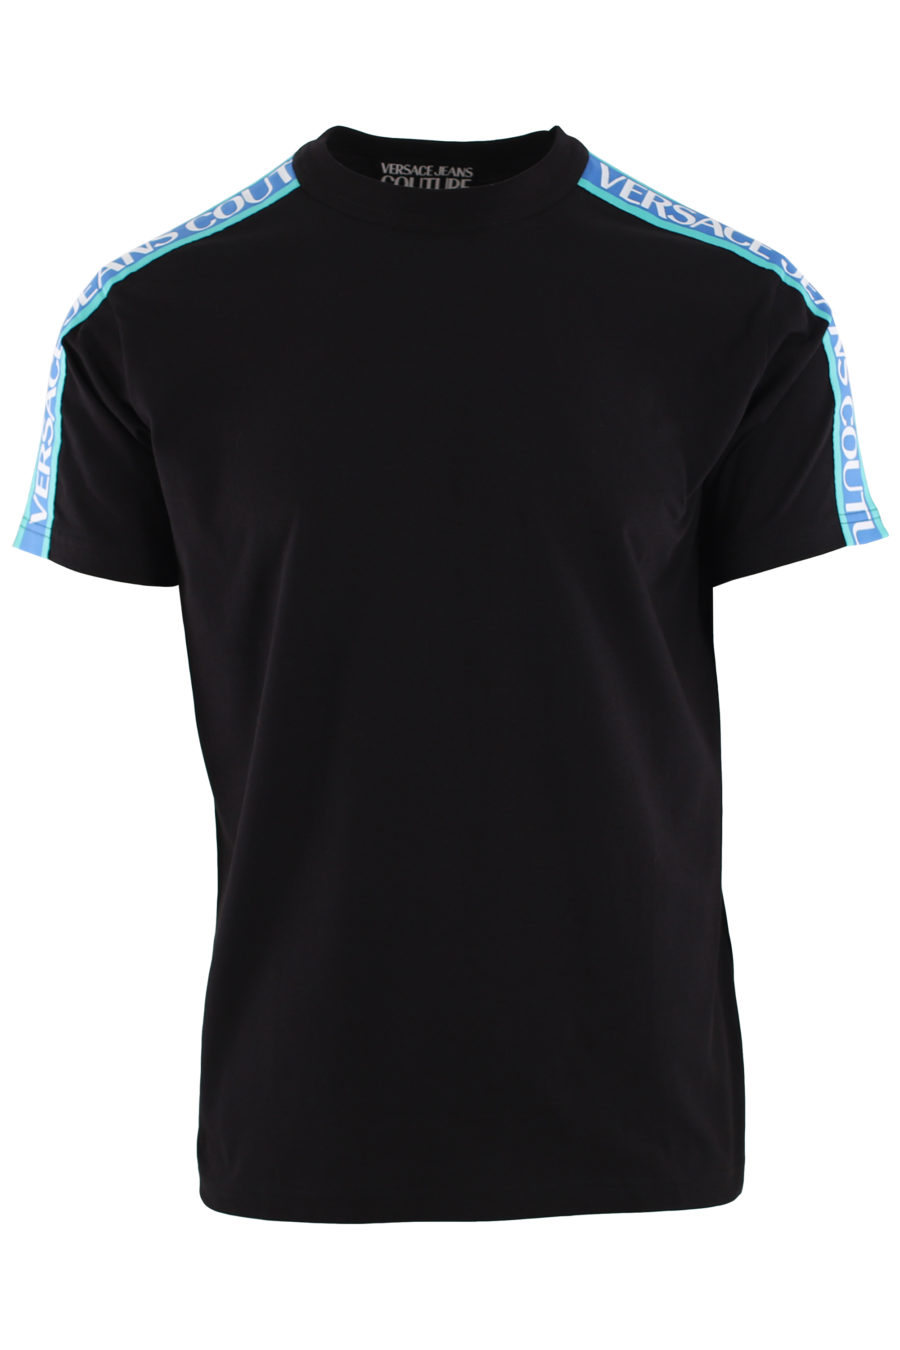 Camiseta negra con cinta azul con logotipo - IMG 0421